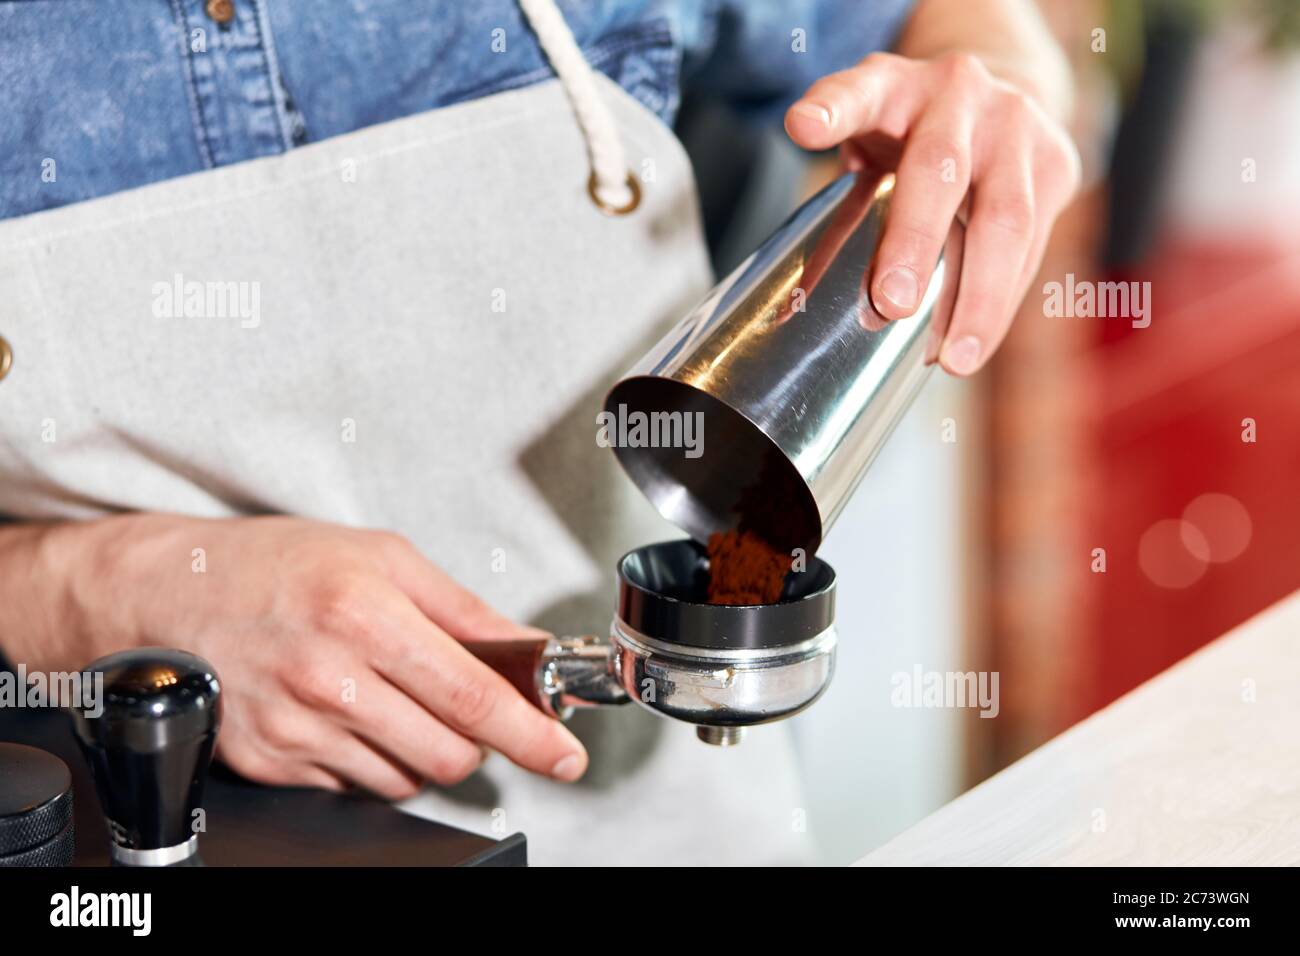 Männliche Hände bringt gemahlenen Kaffee in den Sabotagekontakt. Barista nimmt Auftrag, eine Tasse heißen aromatischen Cappuccino für freundliche Gäste aus nächster Nähe zu machen Stockfoto